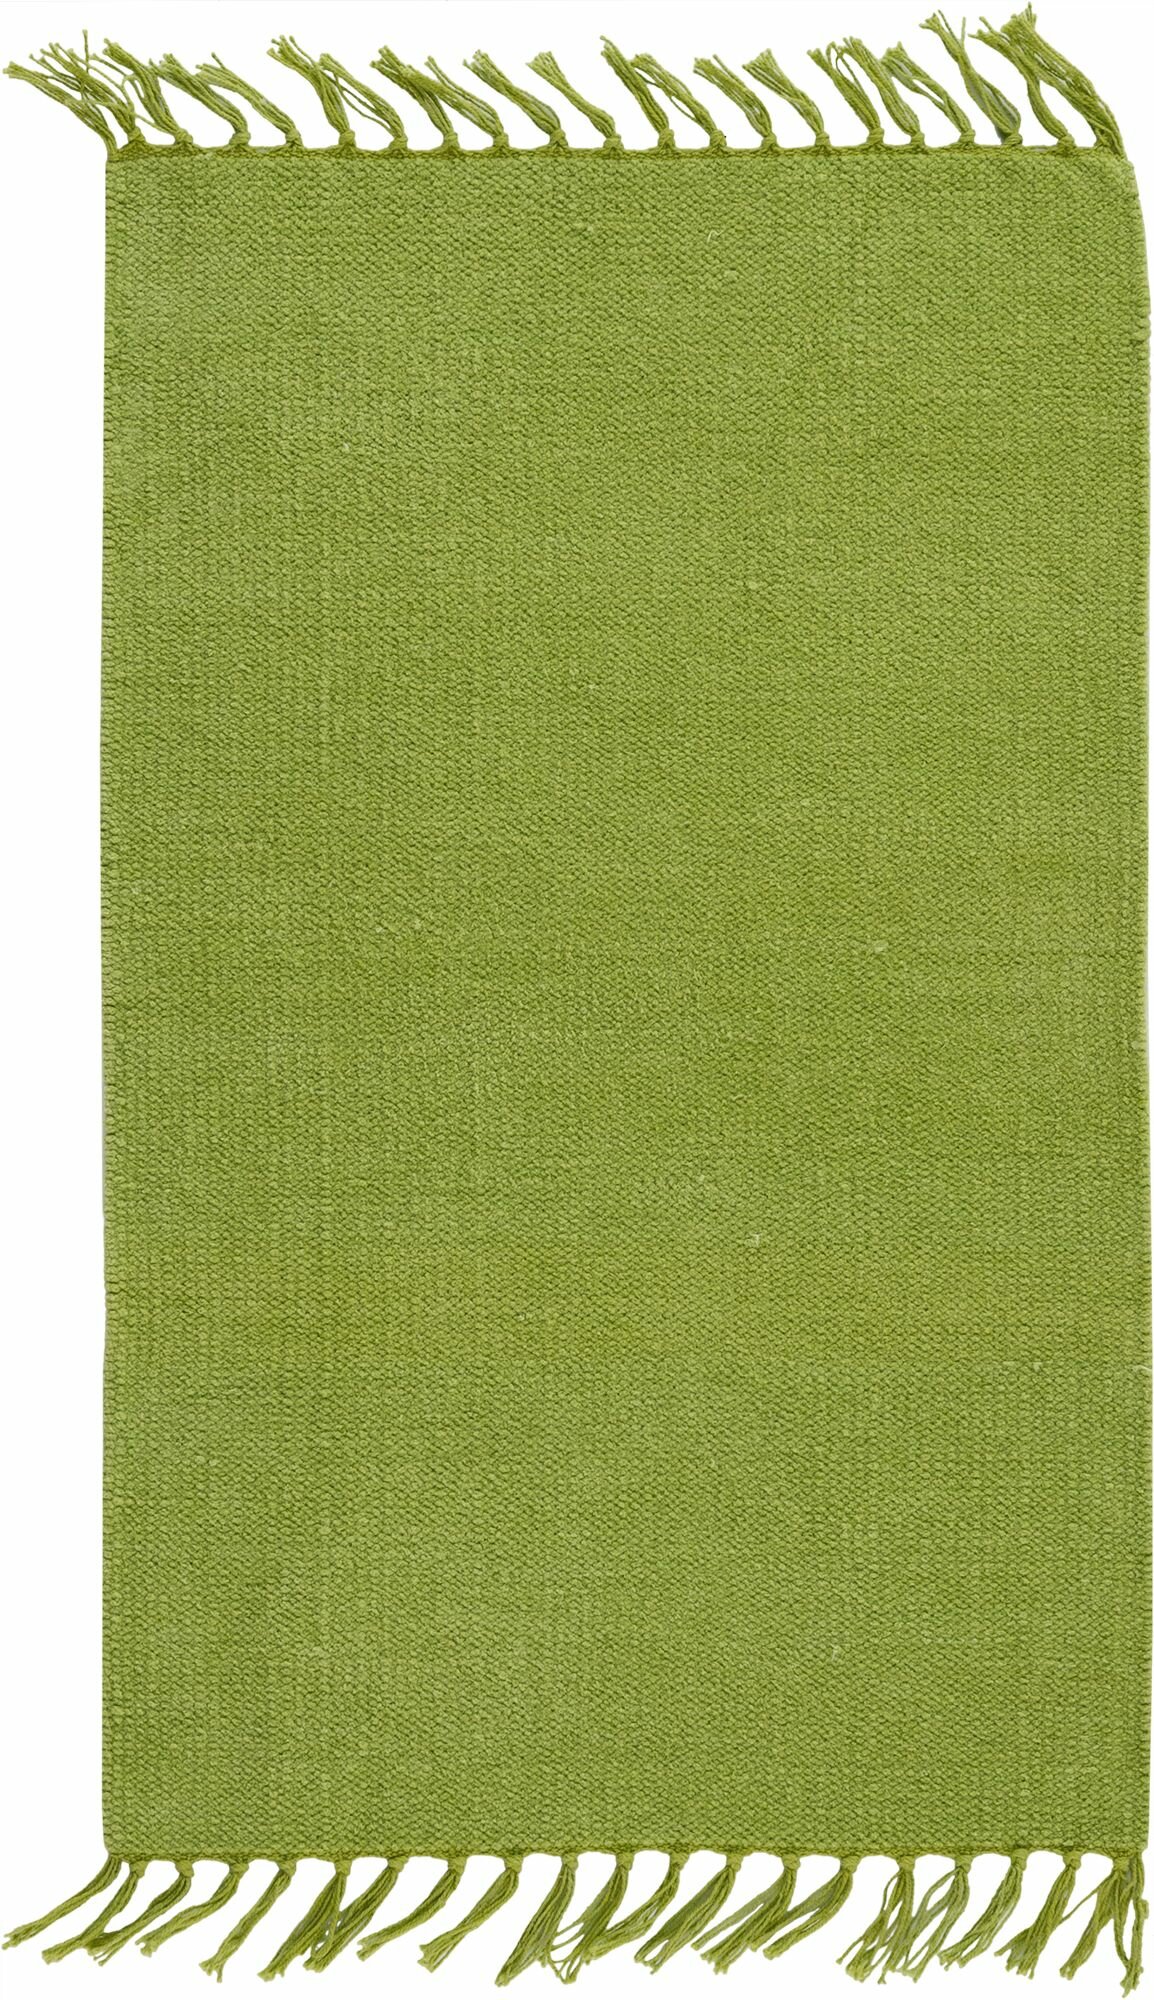 Ковер хлопок Inspire Manoa 50x80 см цвет зеленый